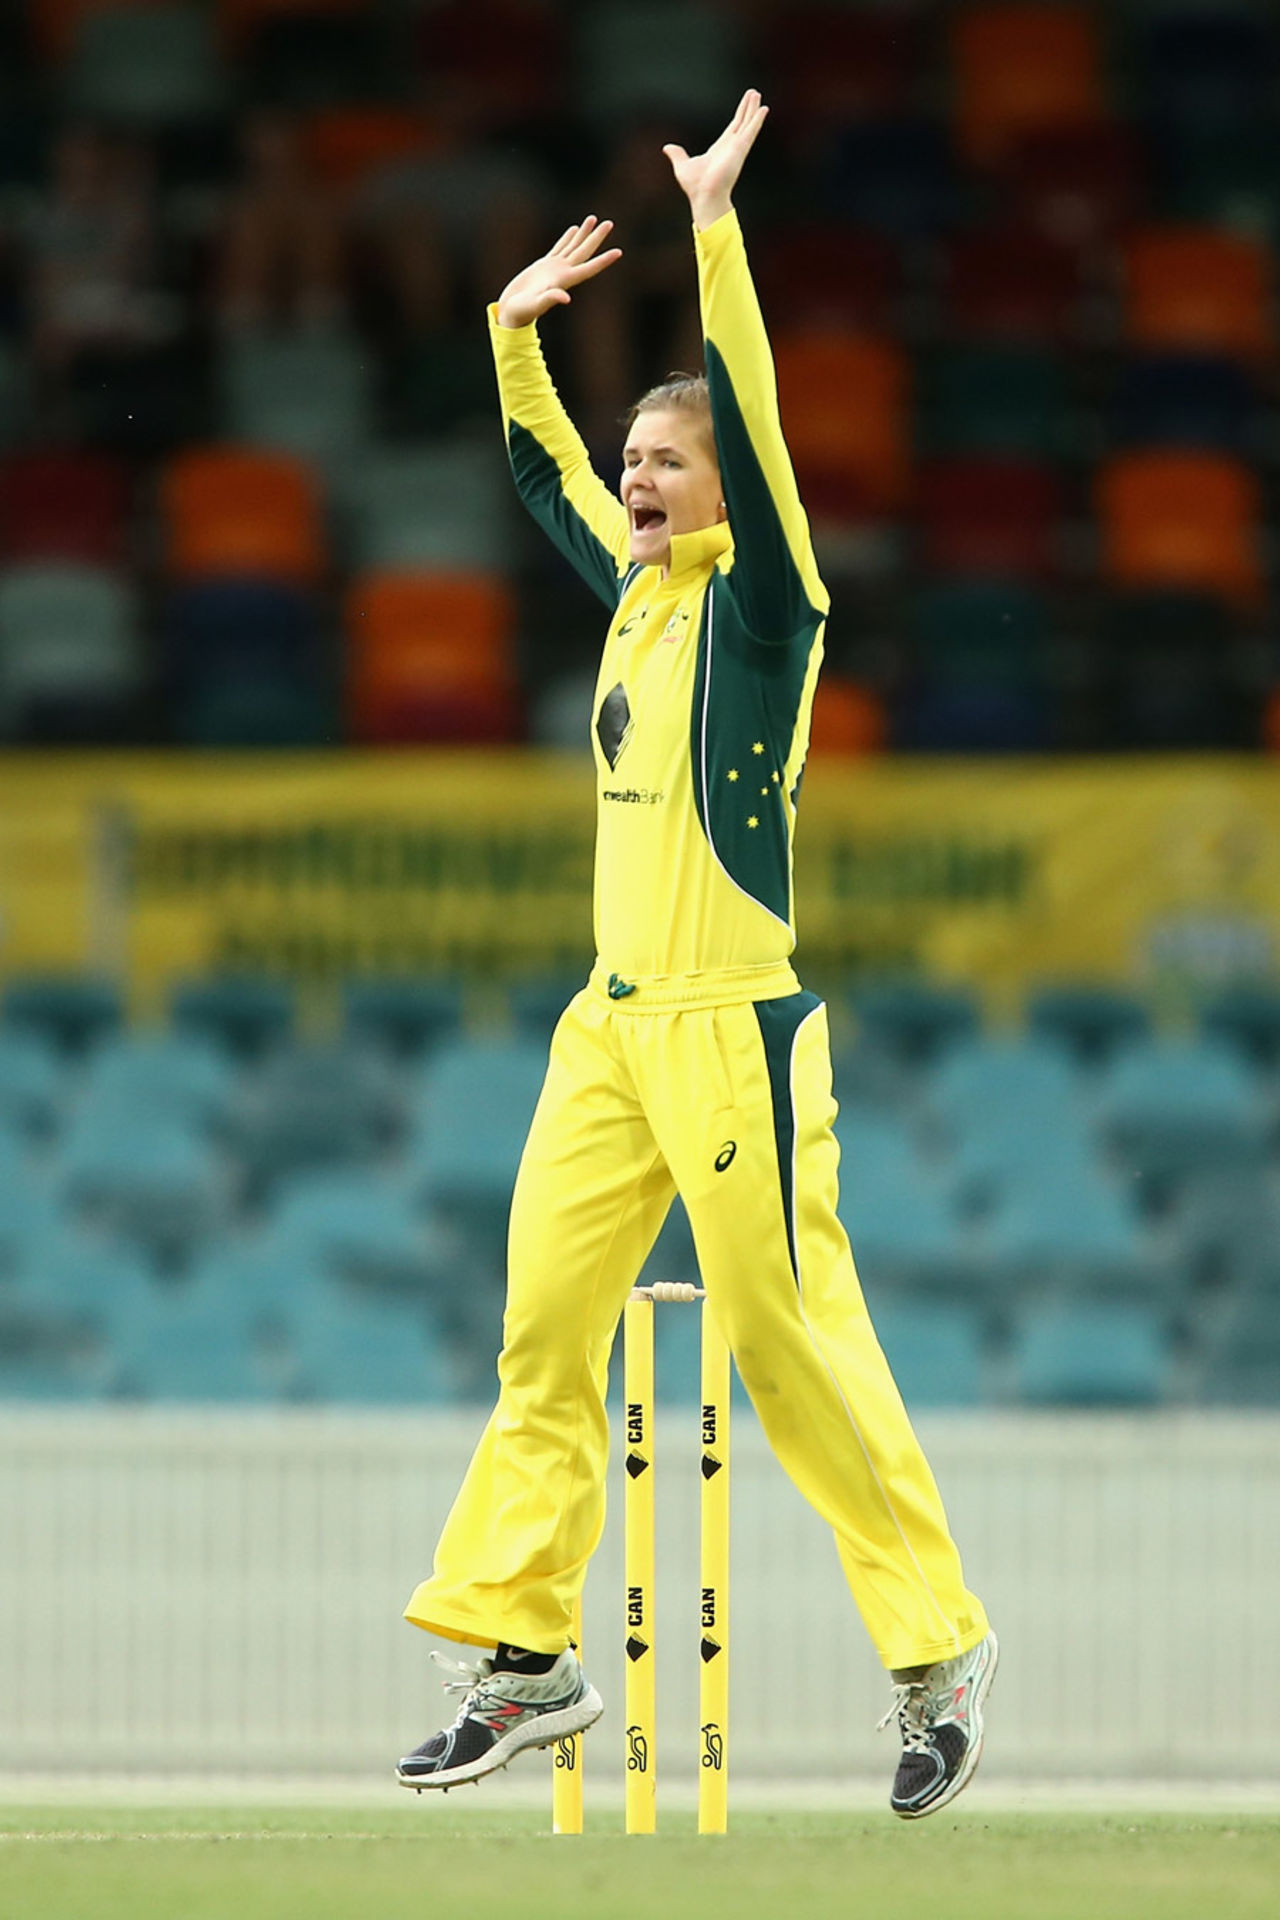 Jess Jonassen appeals for lbw, Australia v South Africa,  2nd women's ODI, Canberra, November 20, 2016